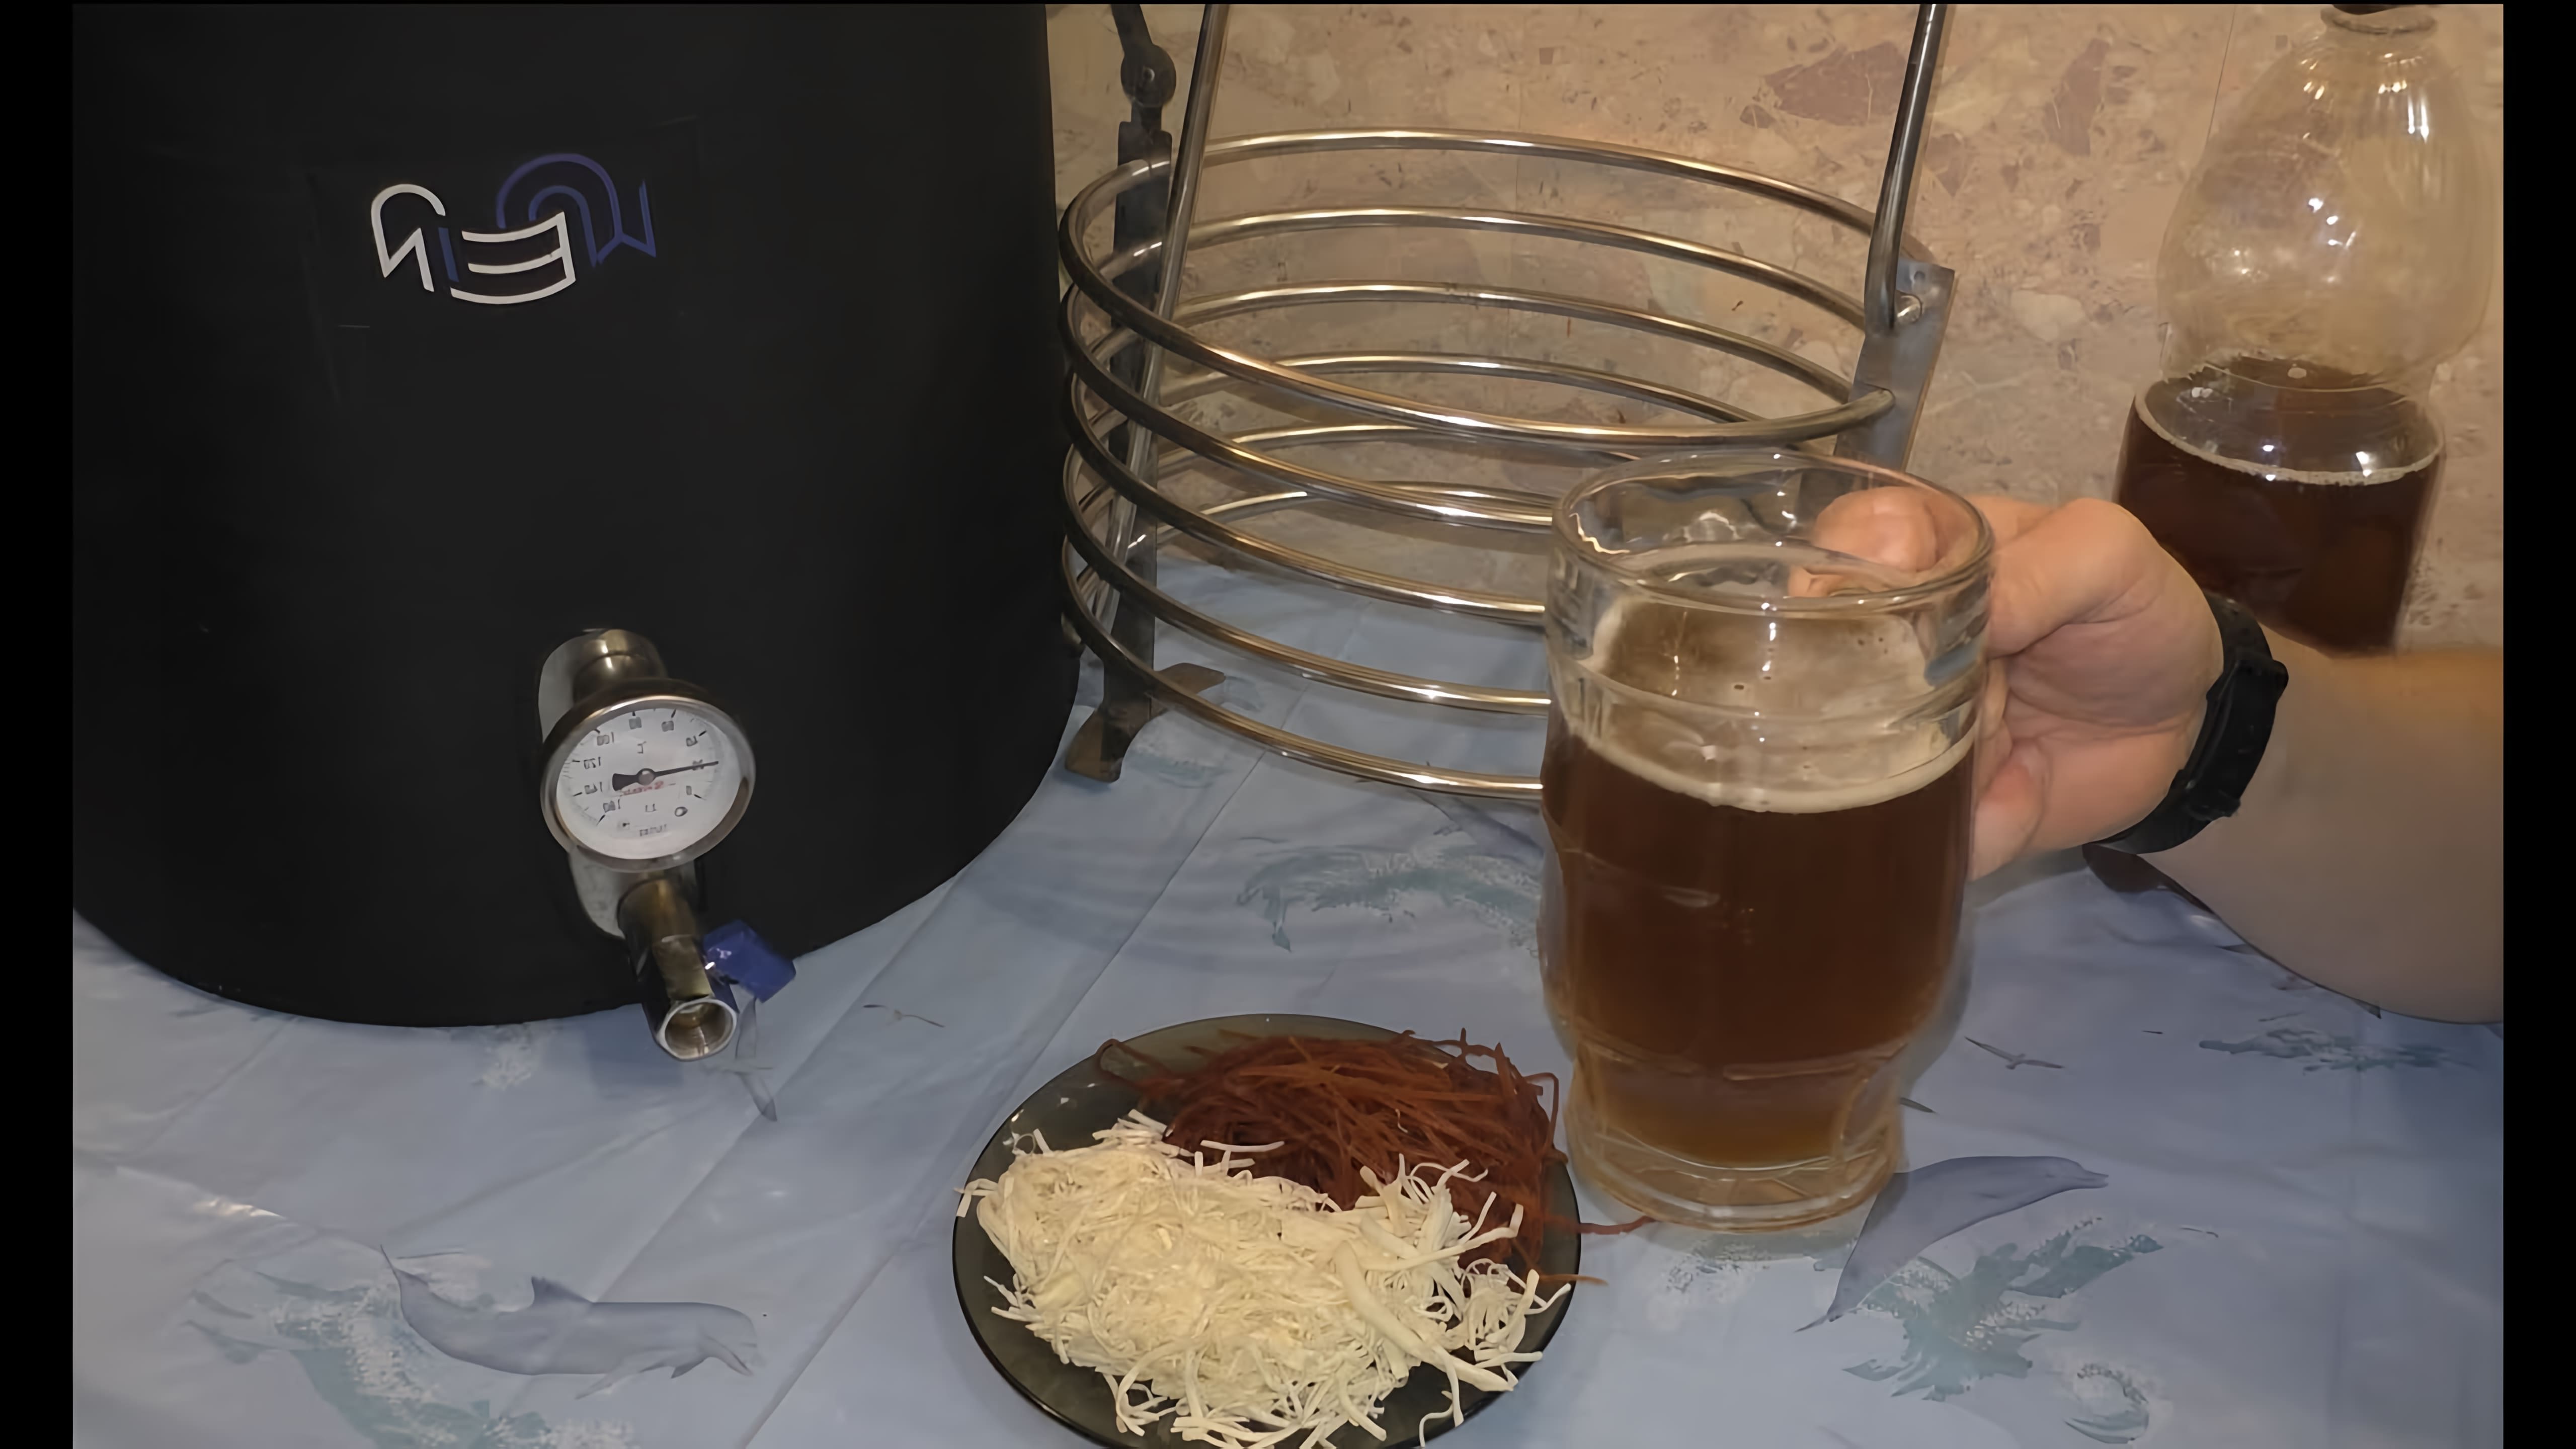 В данном видео демонстрируется процесс варки пива "Пшеничный Эль" на пивоварне Wein